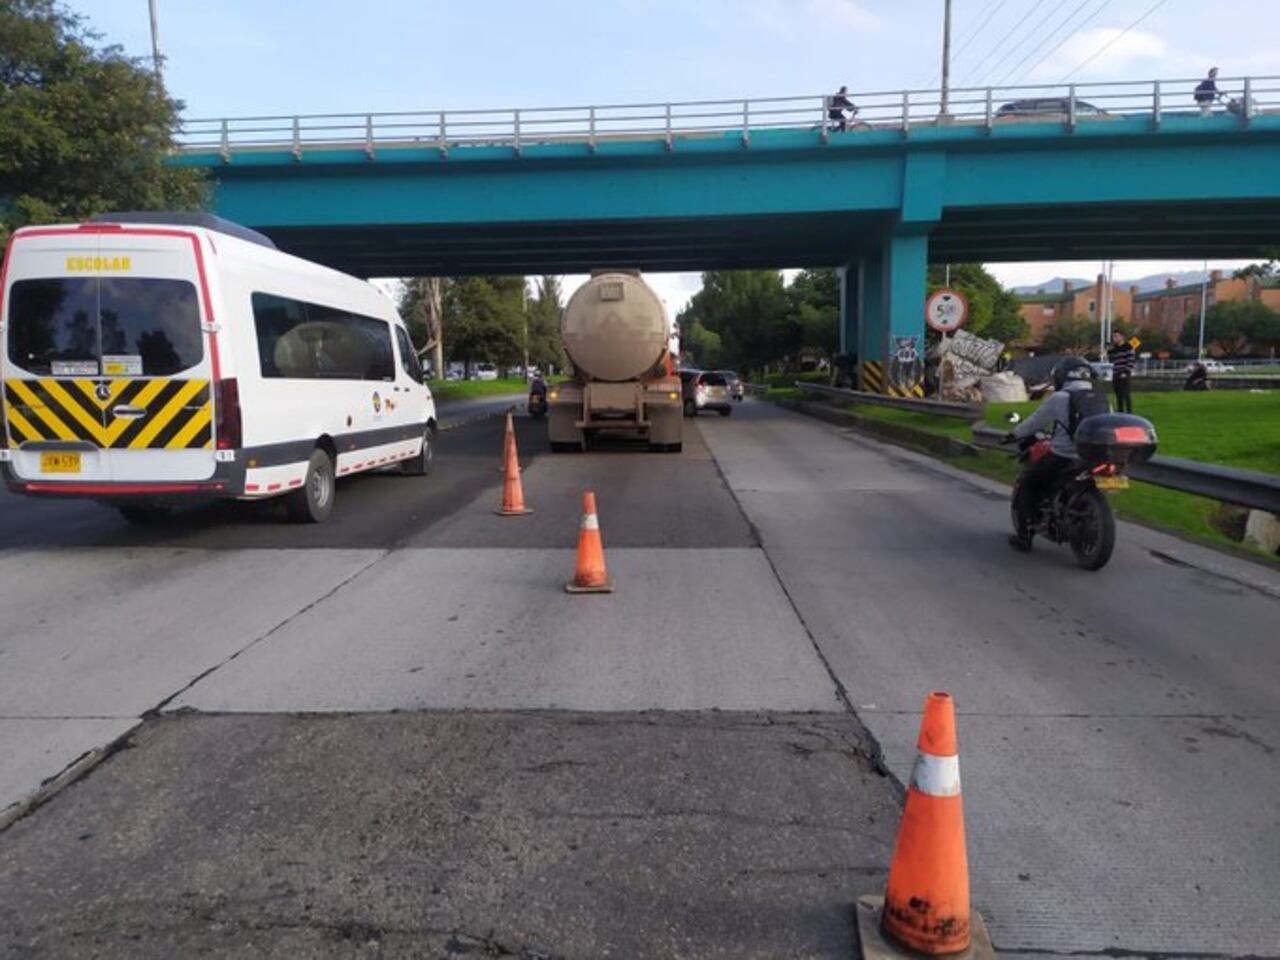 Siniestro en la localidad de Suba entre camión y automóvil en la Autonorte con Calle 153, Sentido Sur - Norte. Unidad de Tránsito Bogotá y ambulancia asignada.